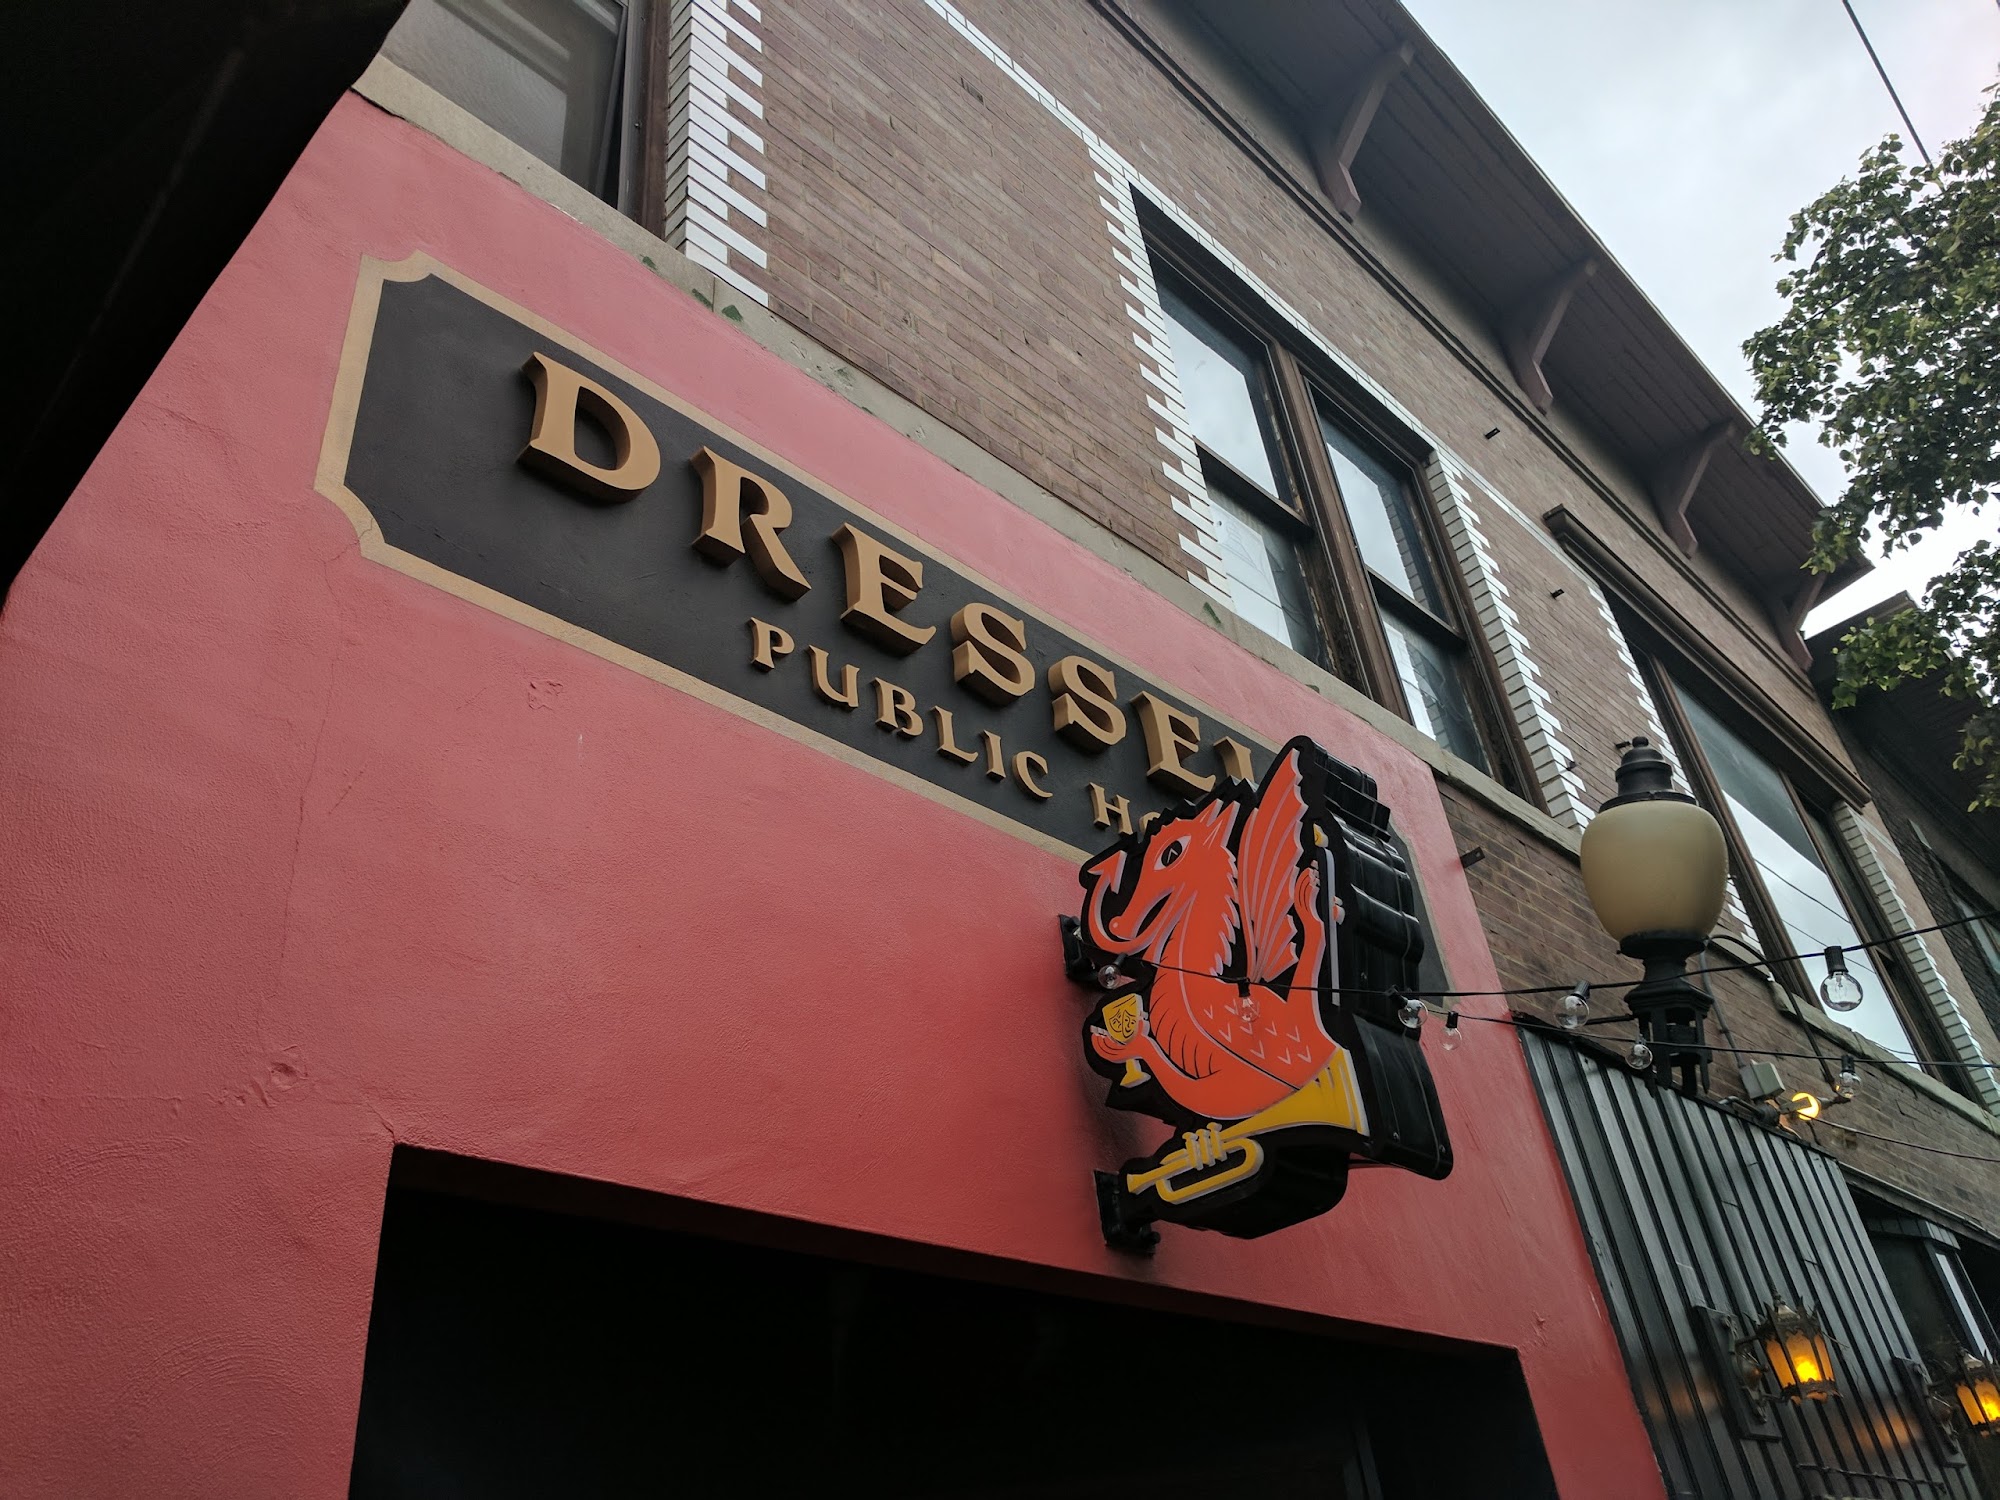 Dressel's Pub